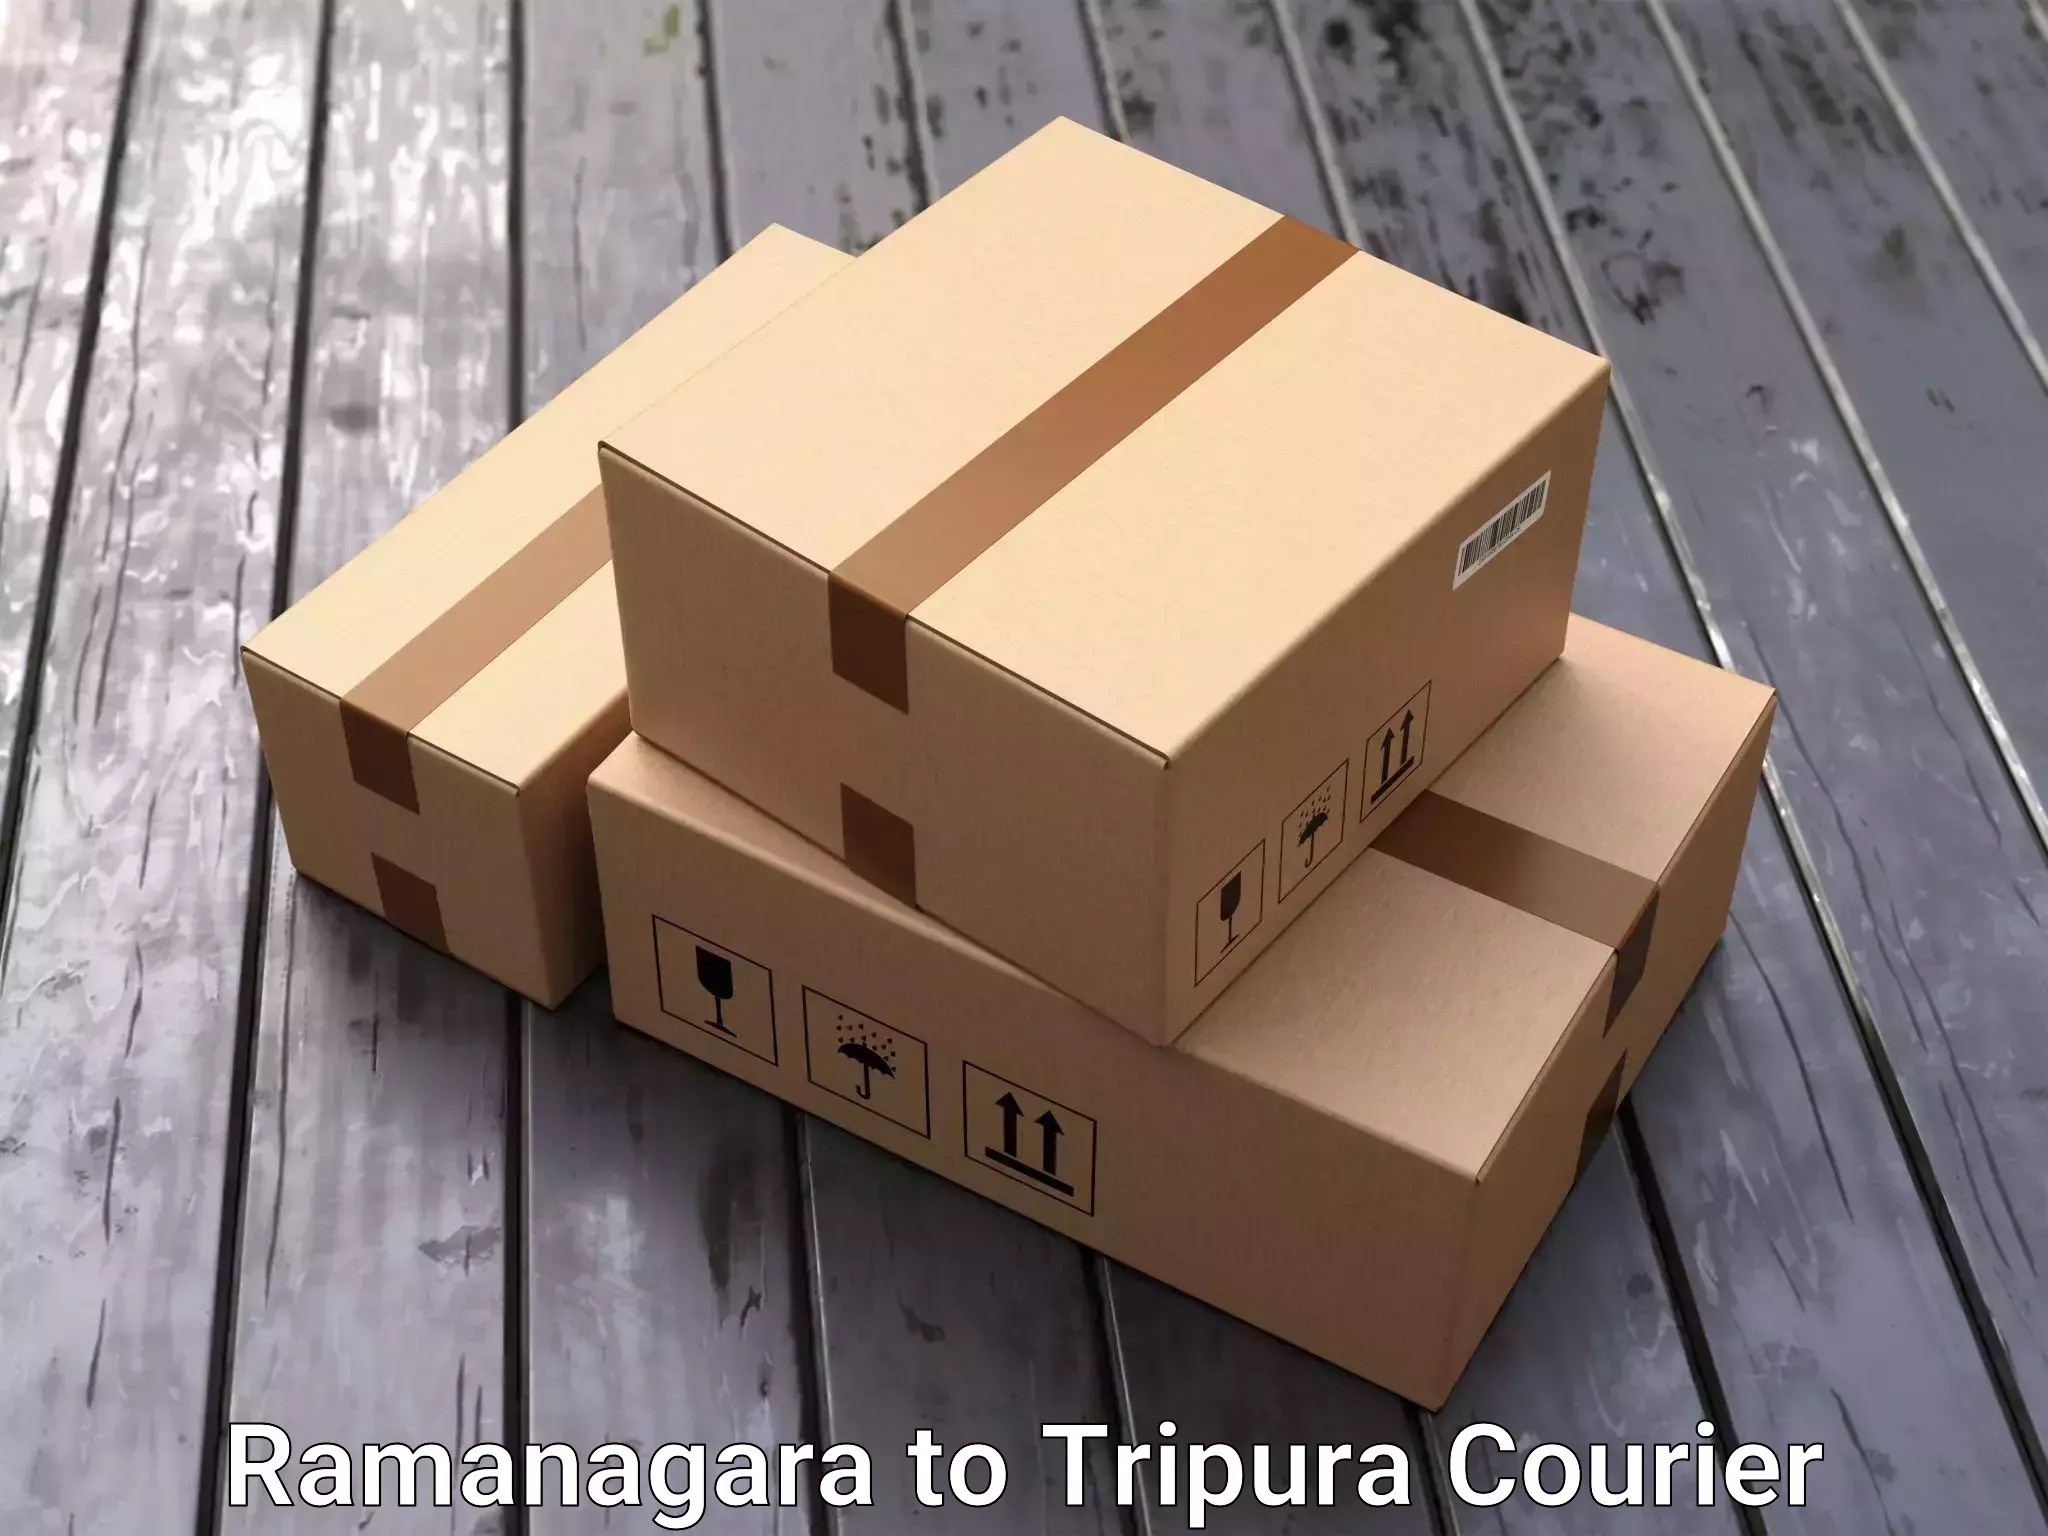 Quality moving company Ramanagara to IIIT Agartala